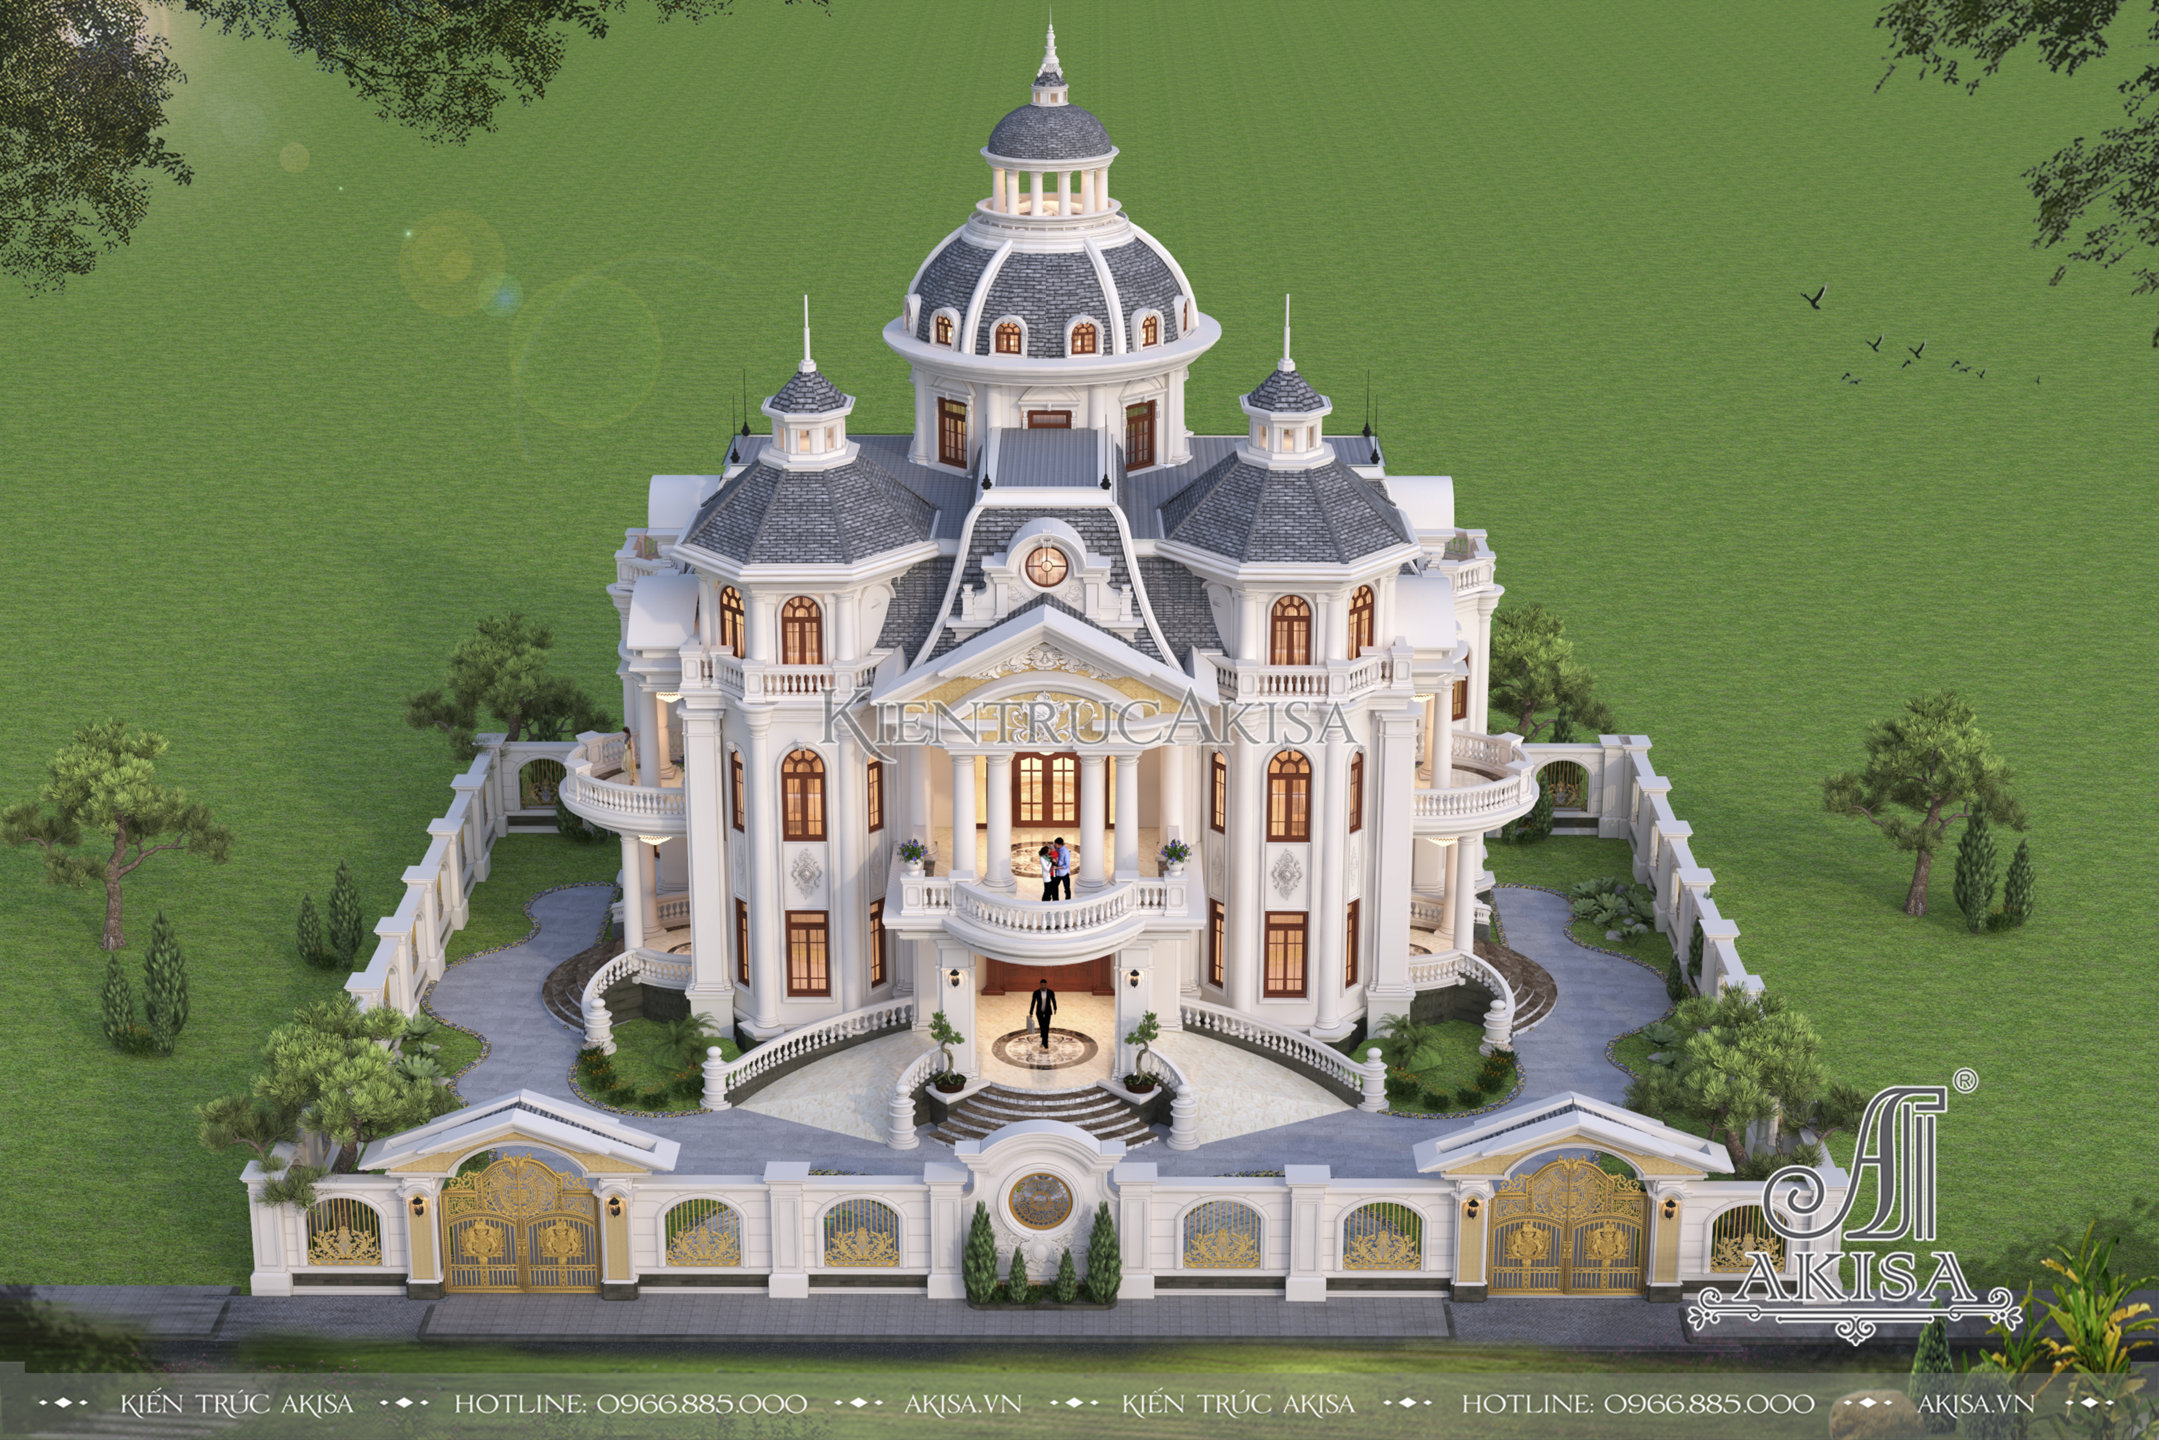 Hệ mái chóp mang đến vẻ đẹp xa hoa, uy quyền cho căn biệt thự lâu đài Pháp